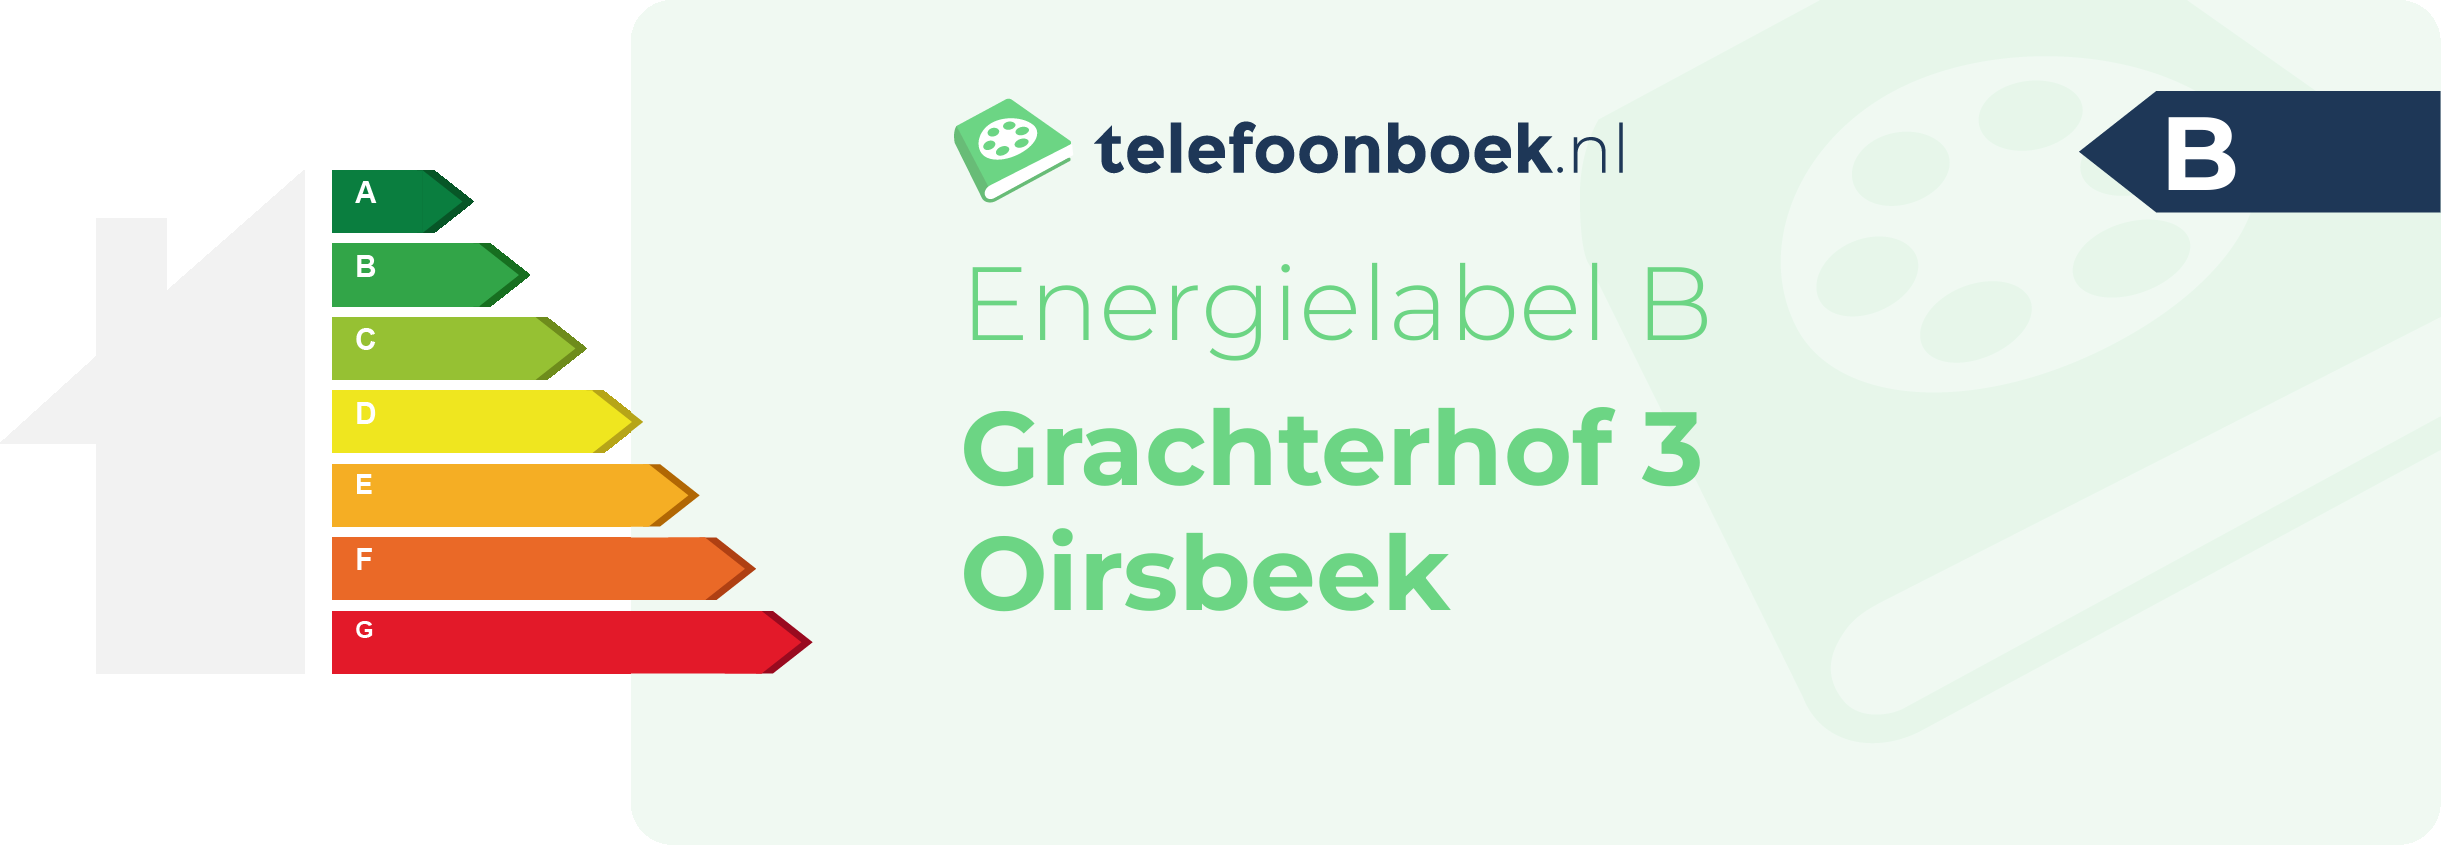 Energielabel Grachterhof 3 Oirsbeek